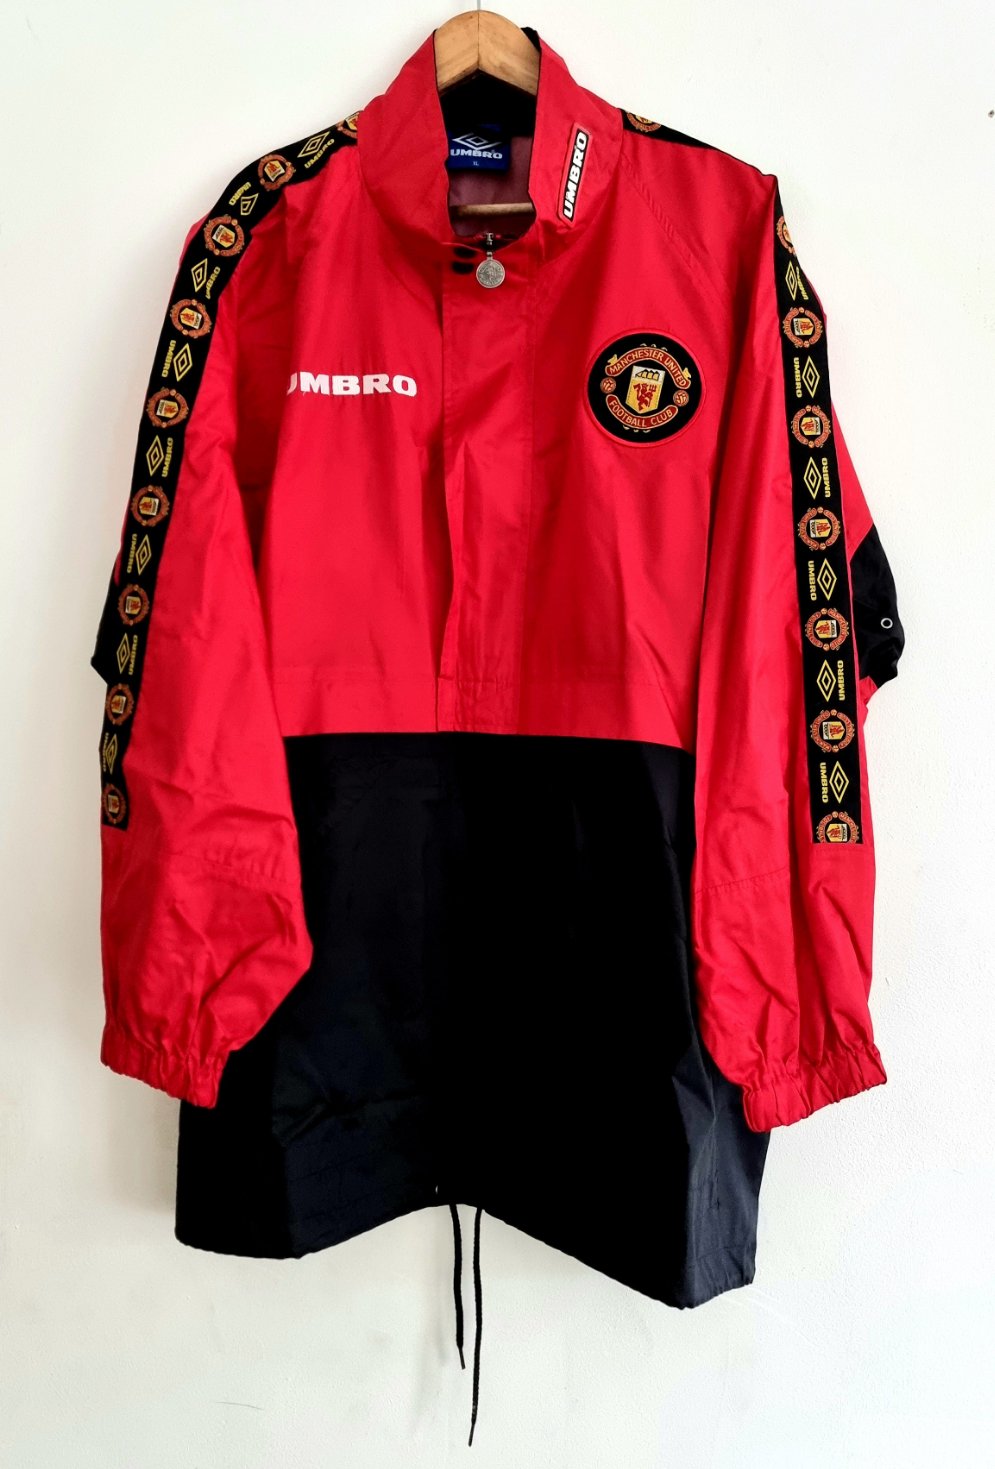 最終決算 1996-97 トラックスーツ Utd. Manchester UMBRO ウェア